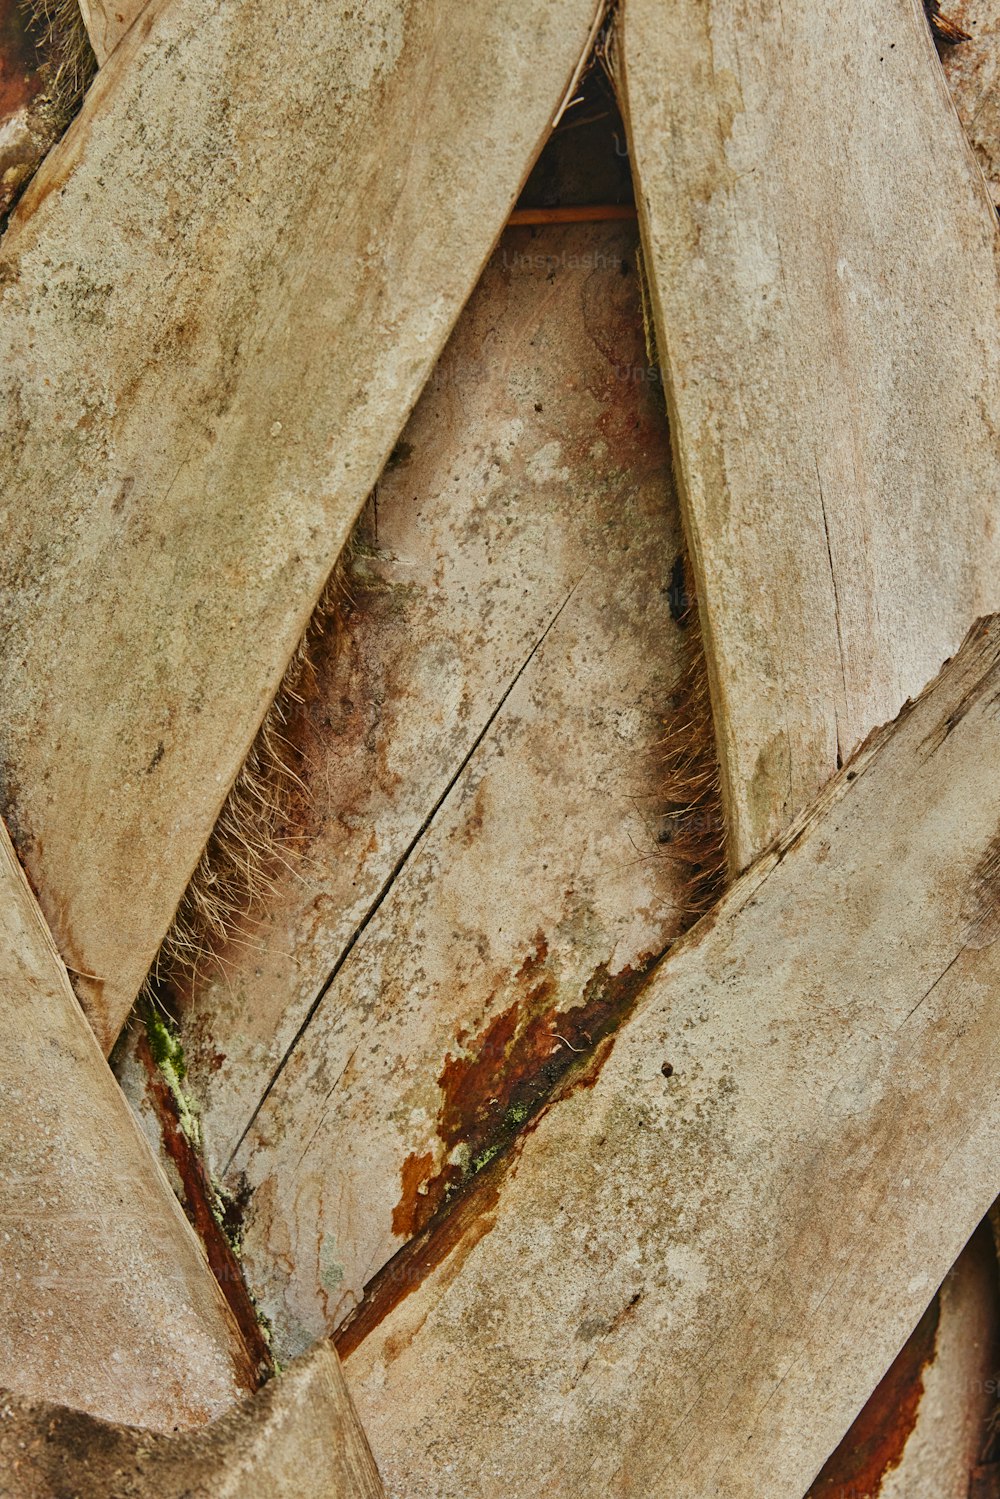 textura de madera con pintura blanca en mal estado - Foto de archivo  #28192819